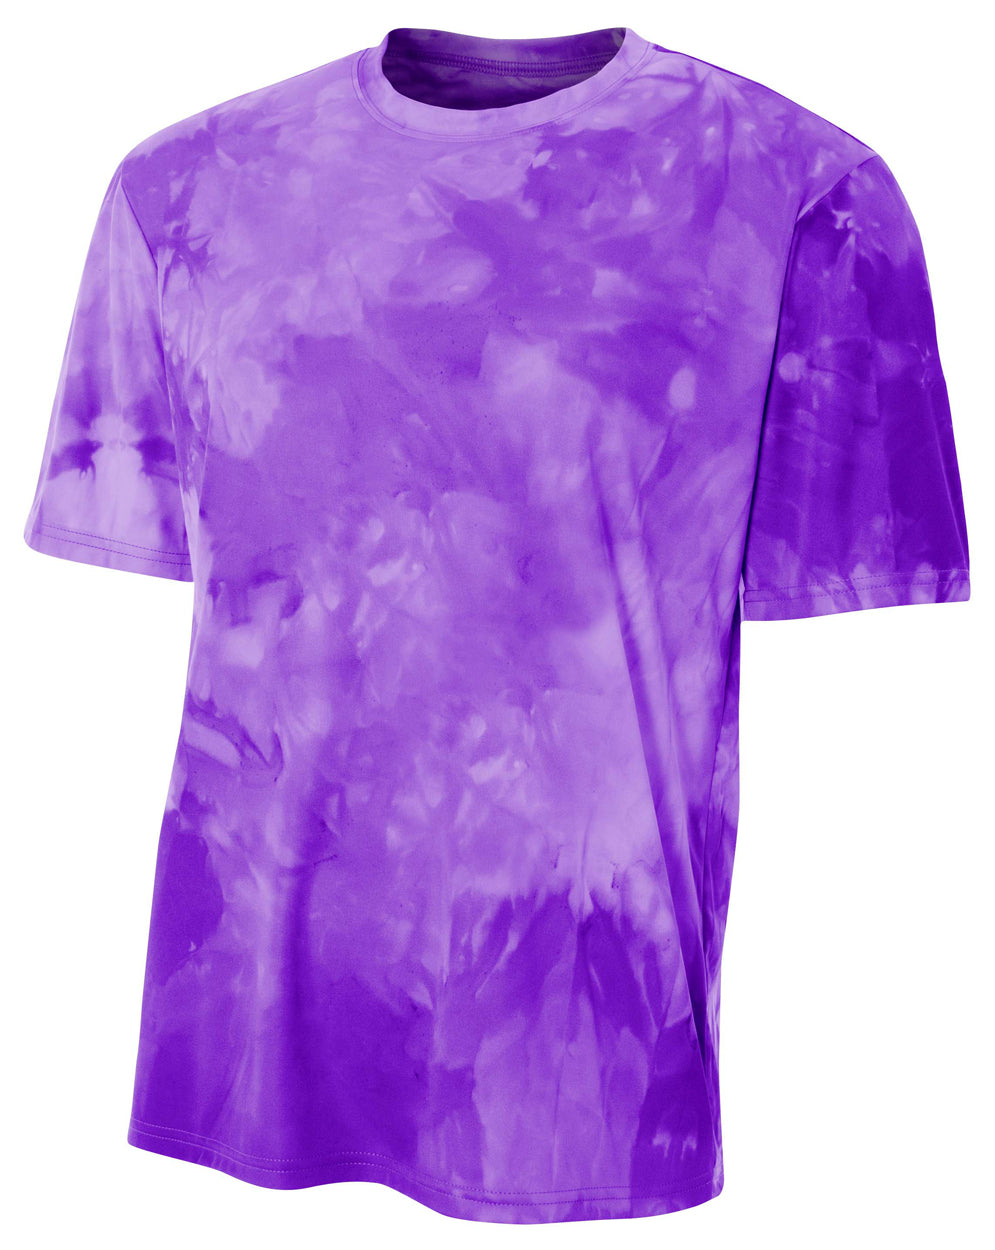 Purple A4 Cloud Dye Tech Tee